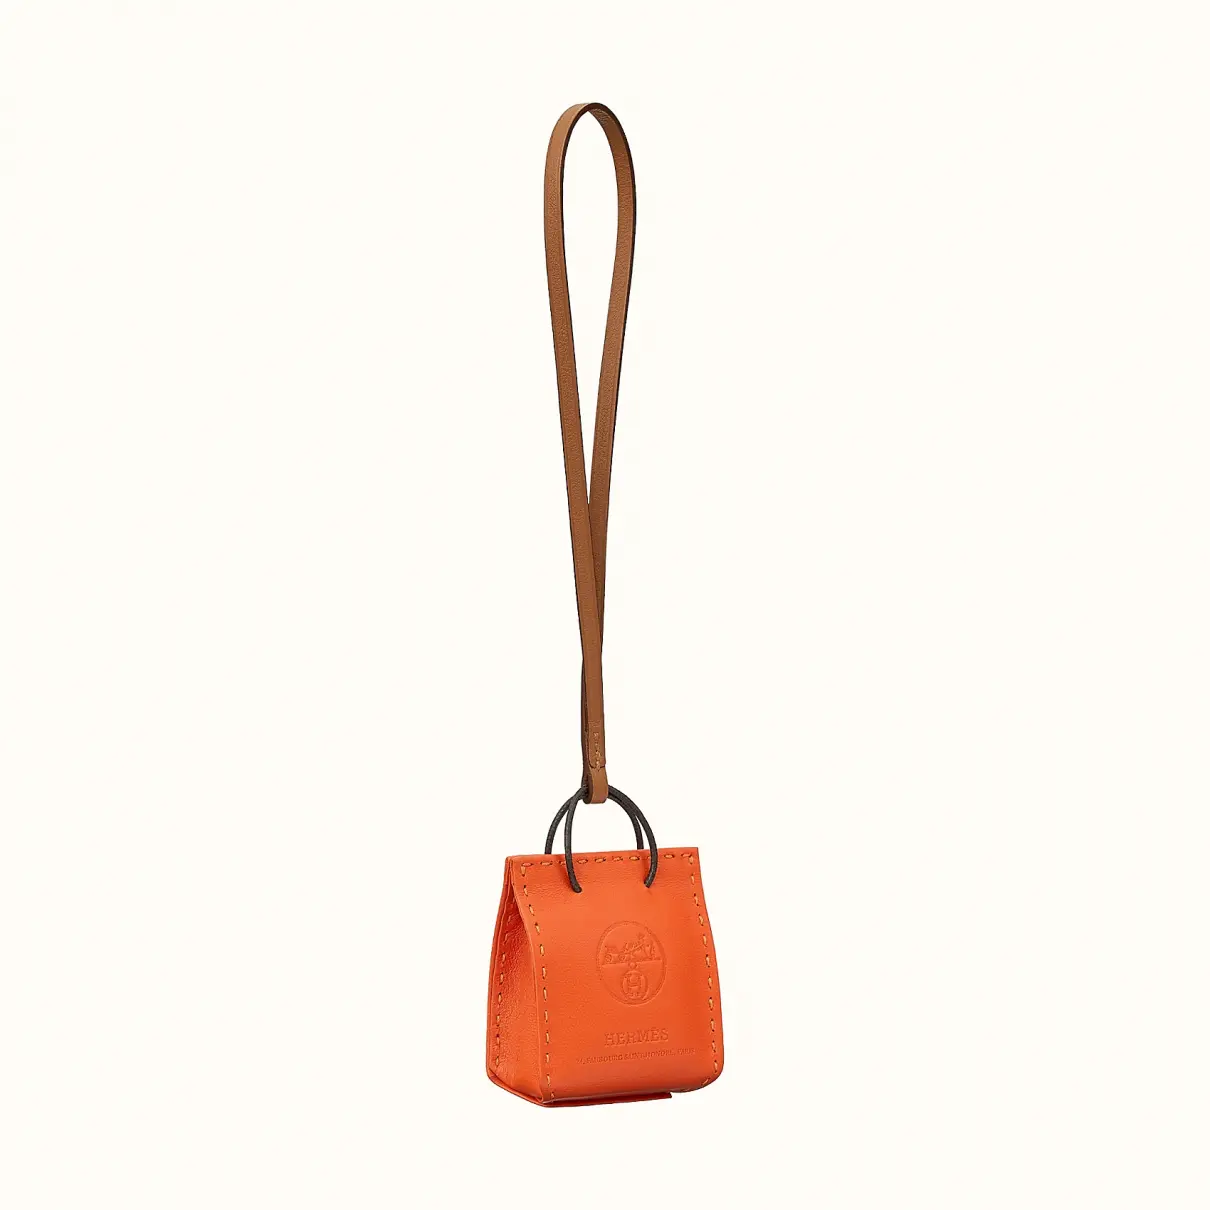 Shopping bag charm leather bag charm Hermès